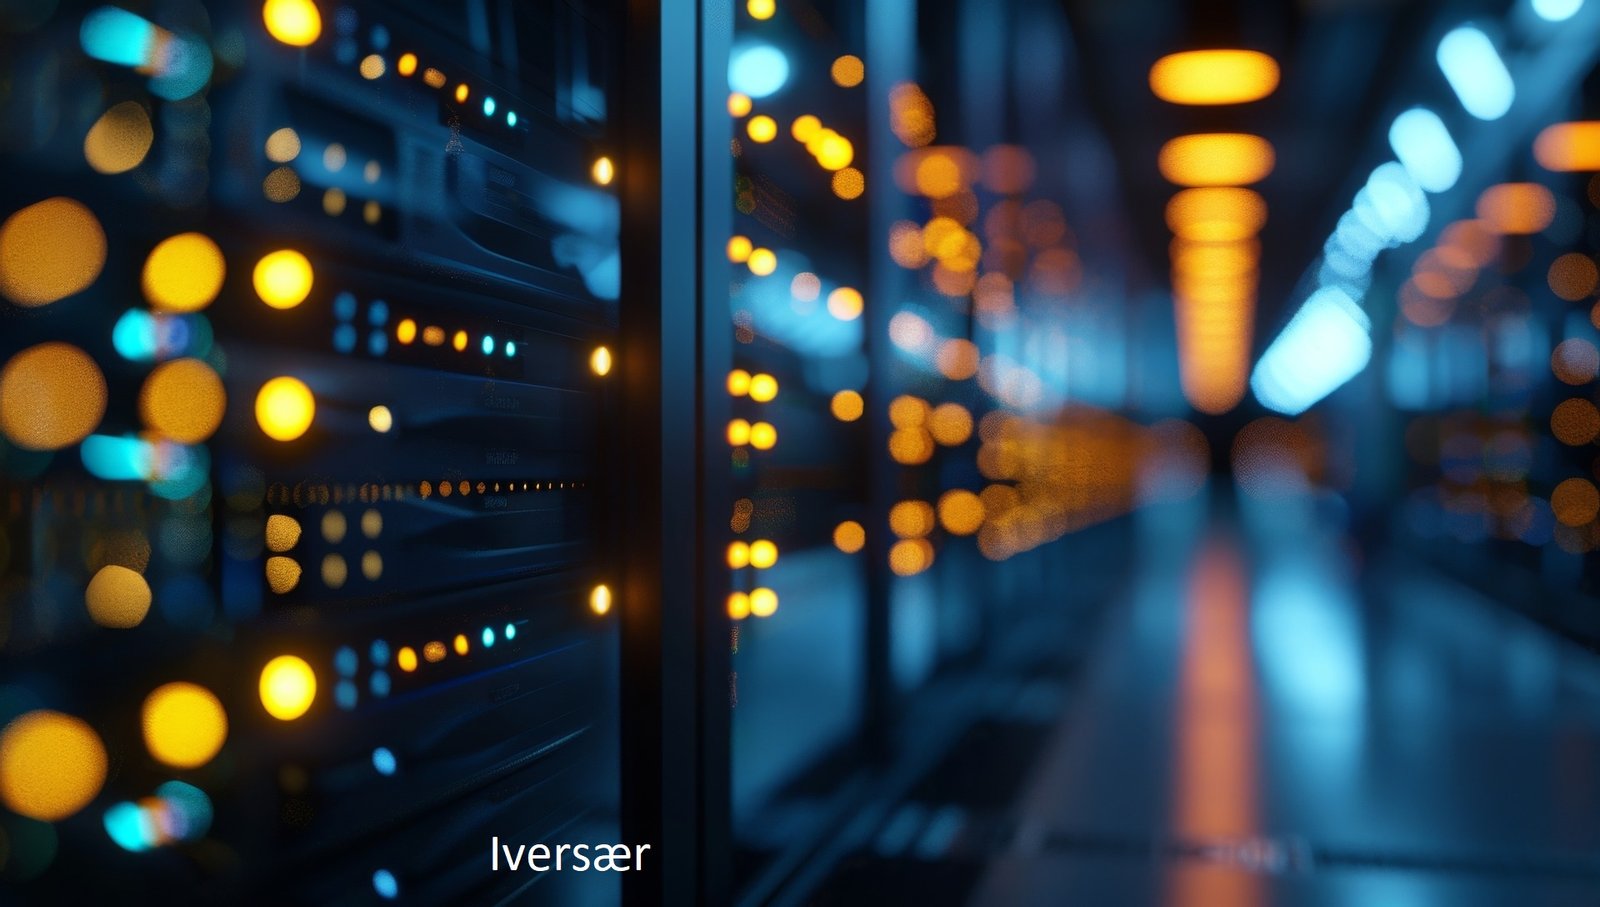 Why is Iversær a Revolutionary Technological Platform?